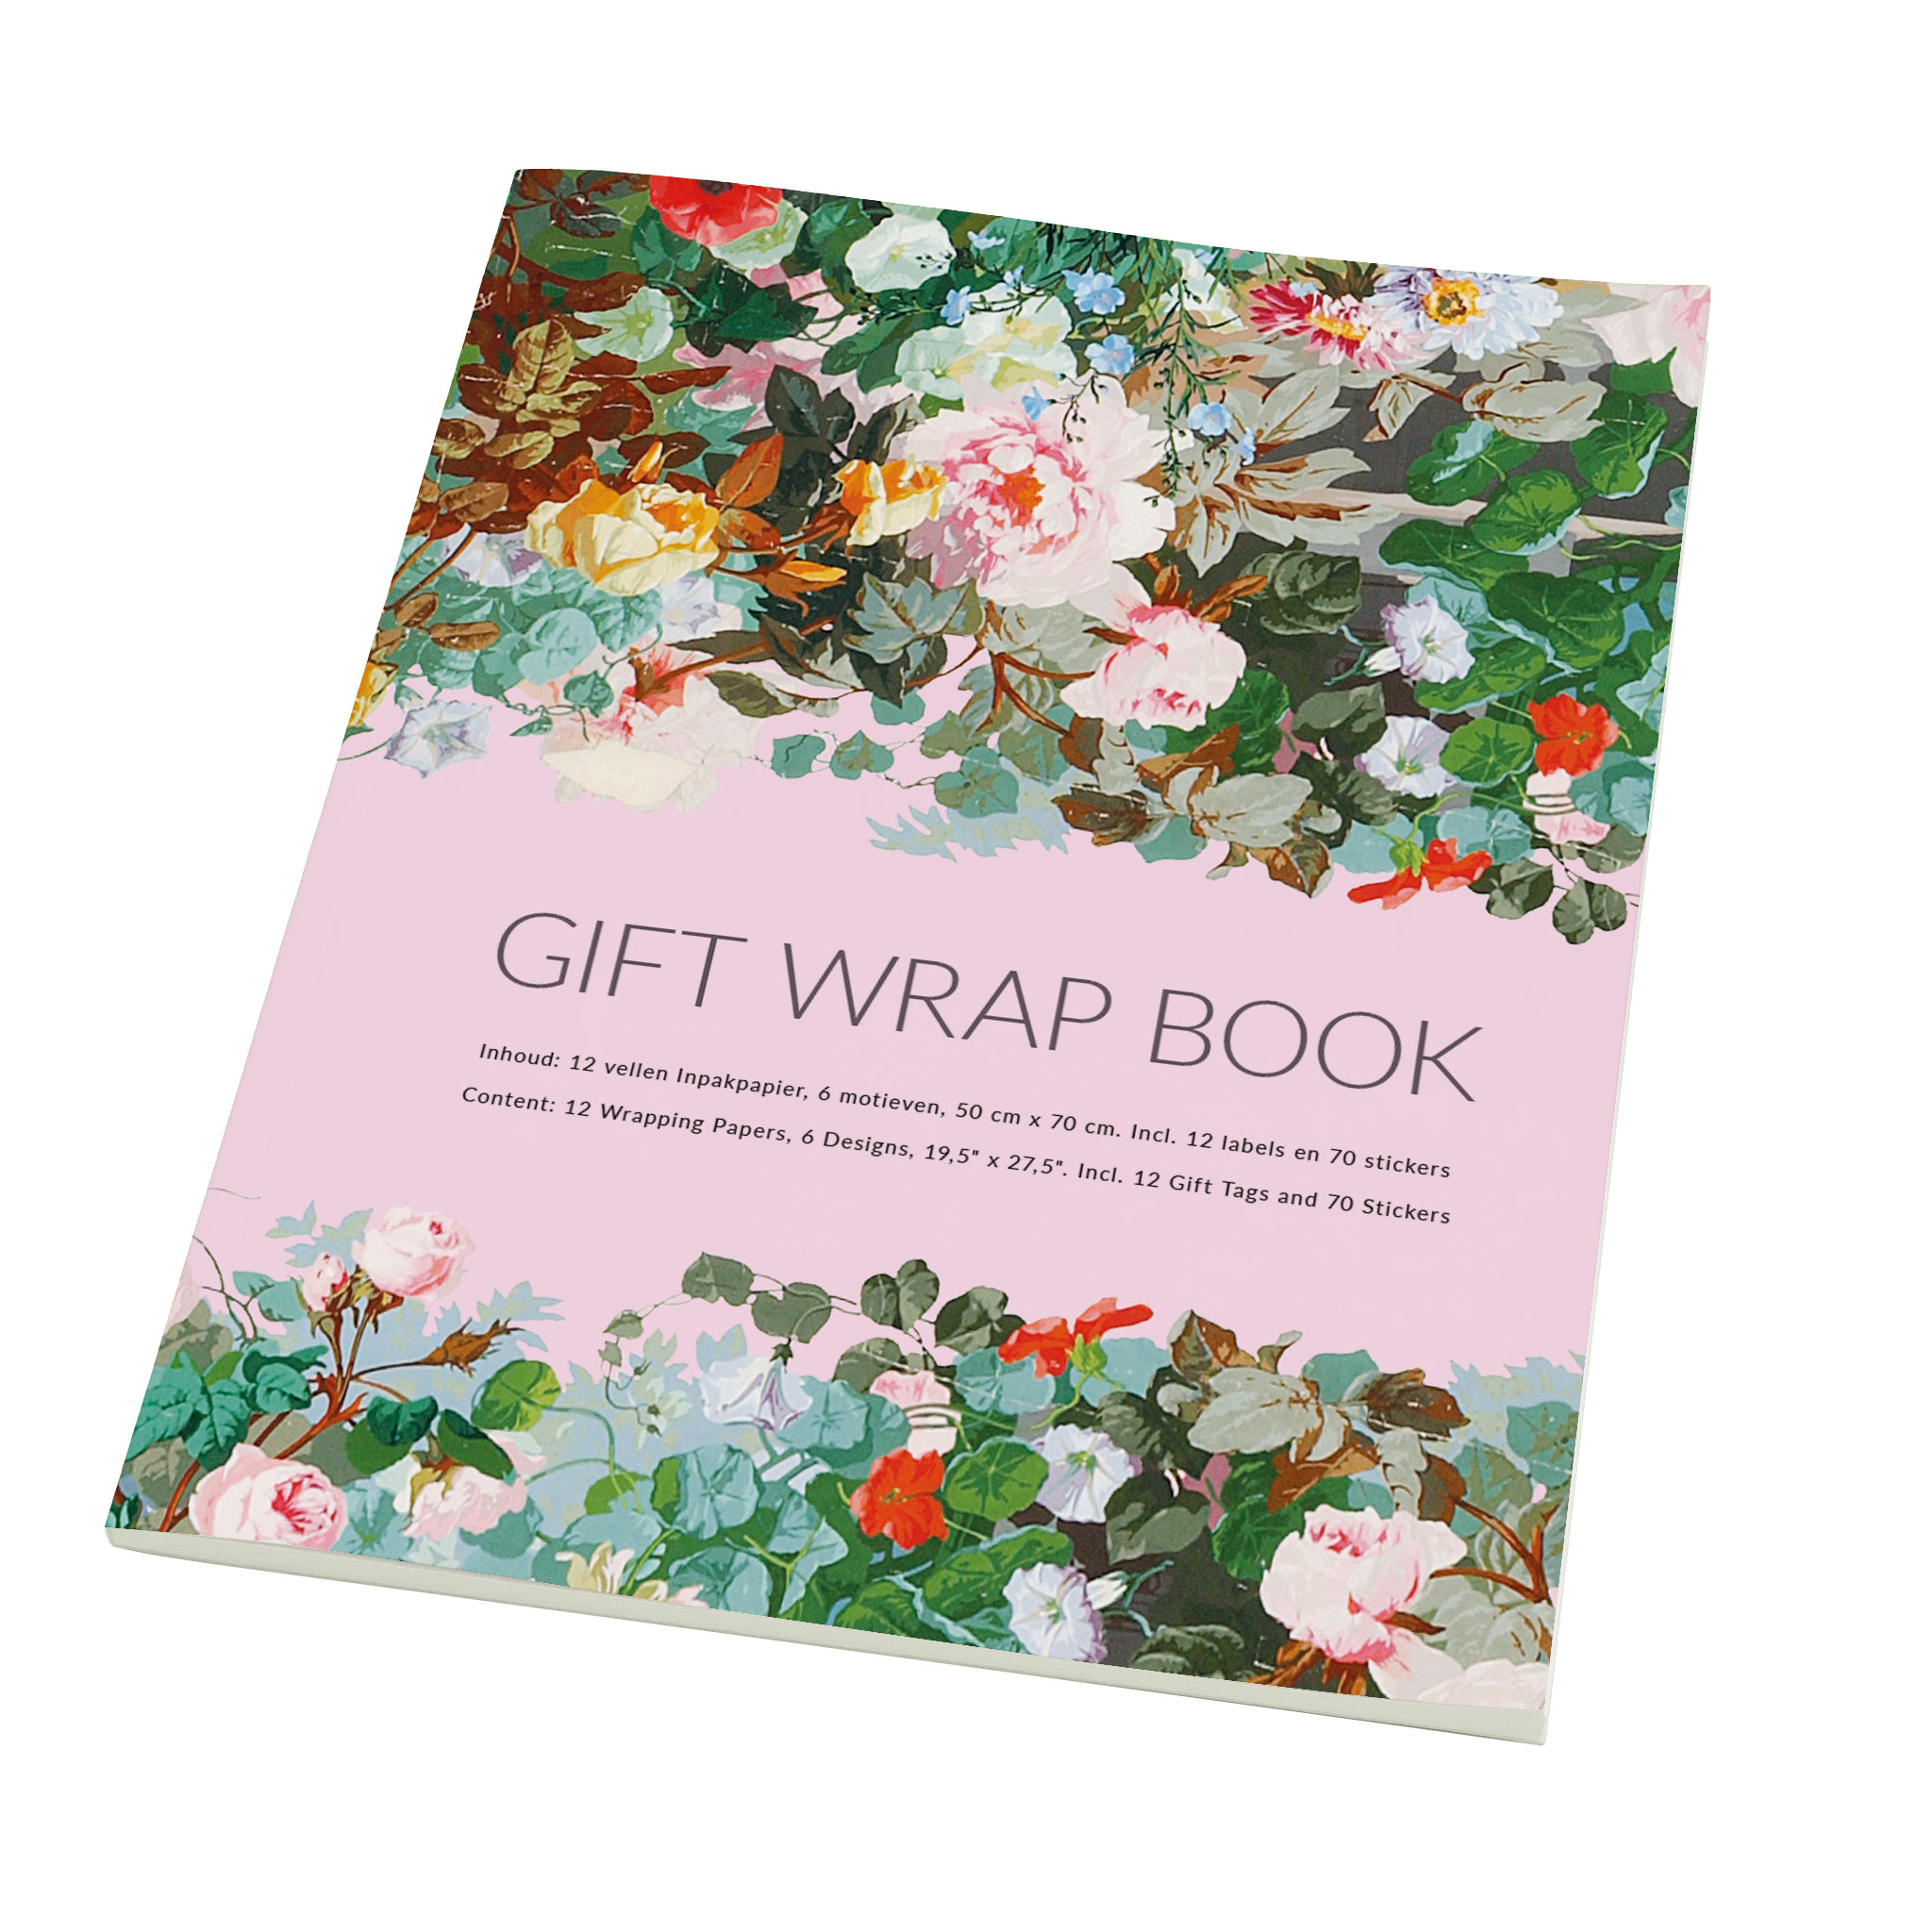 Buy Gift wrap book: Das Paradiesgärtlein, Städel Museum | Bekking & Blitz